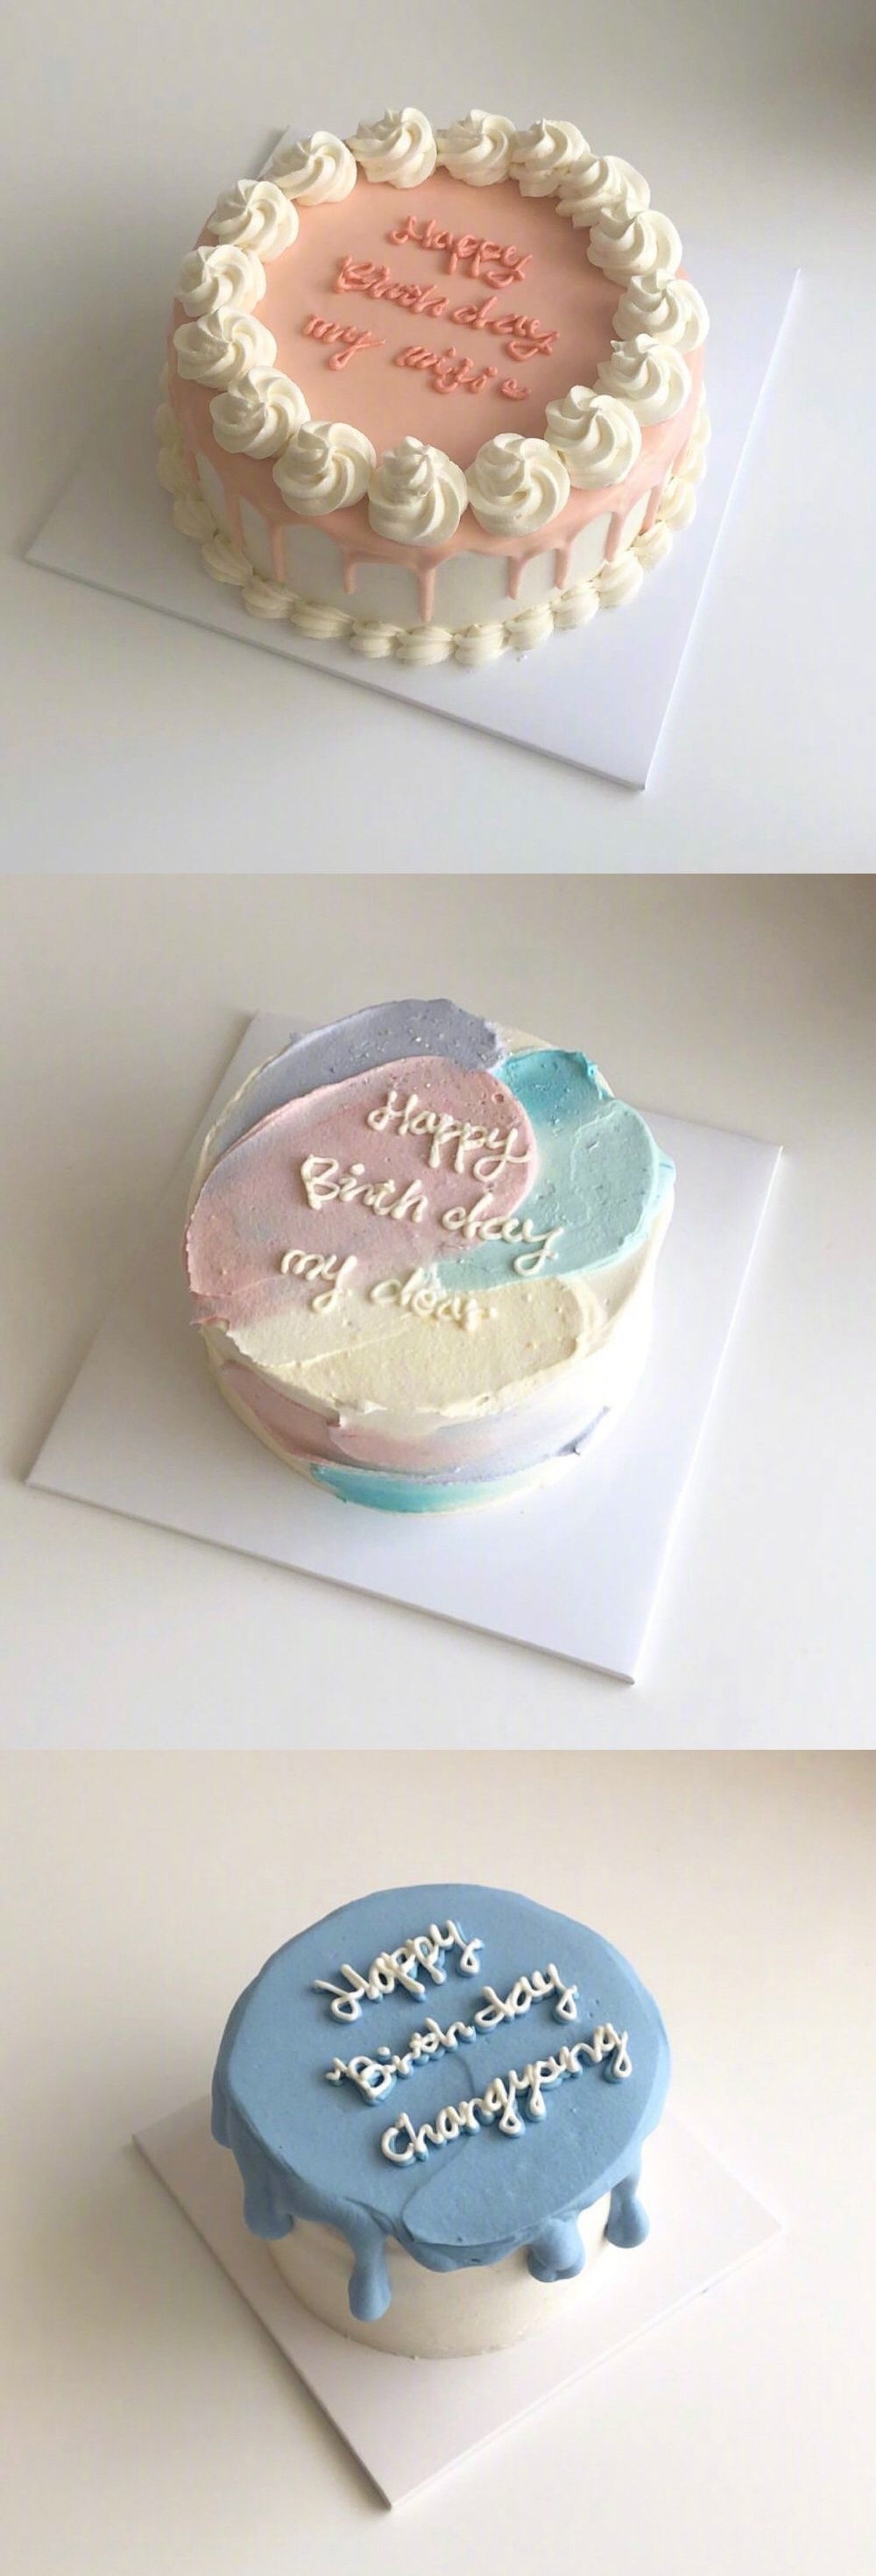 简约ins网红风的生日蛋糕制作技巧图片